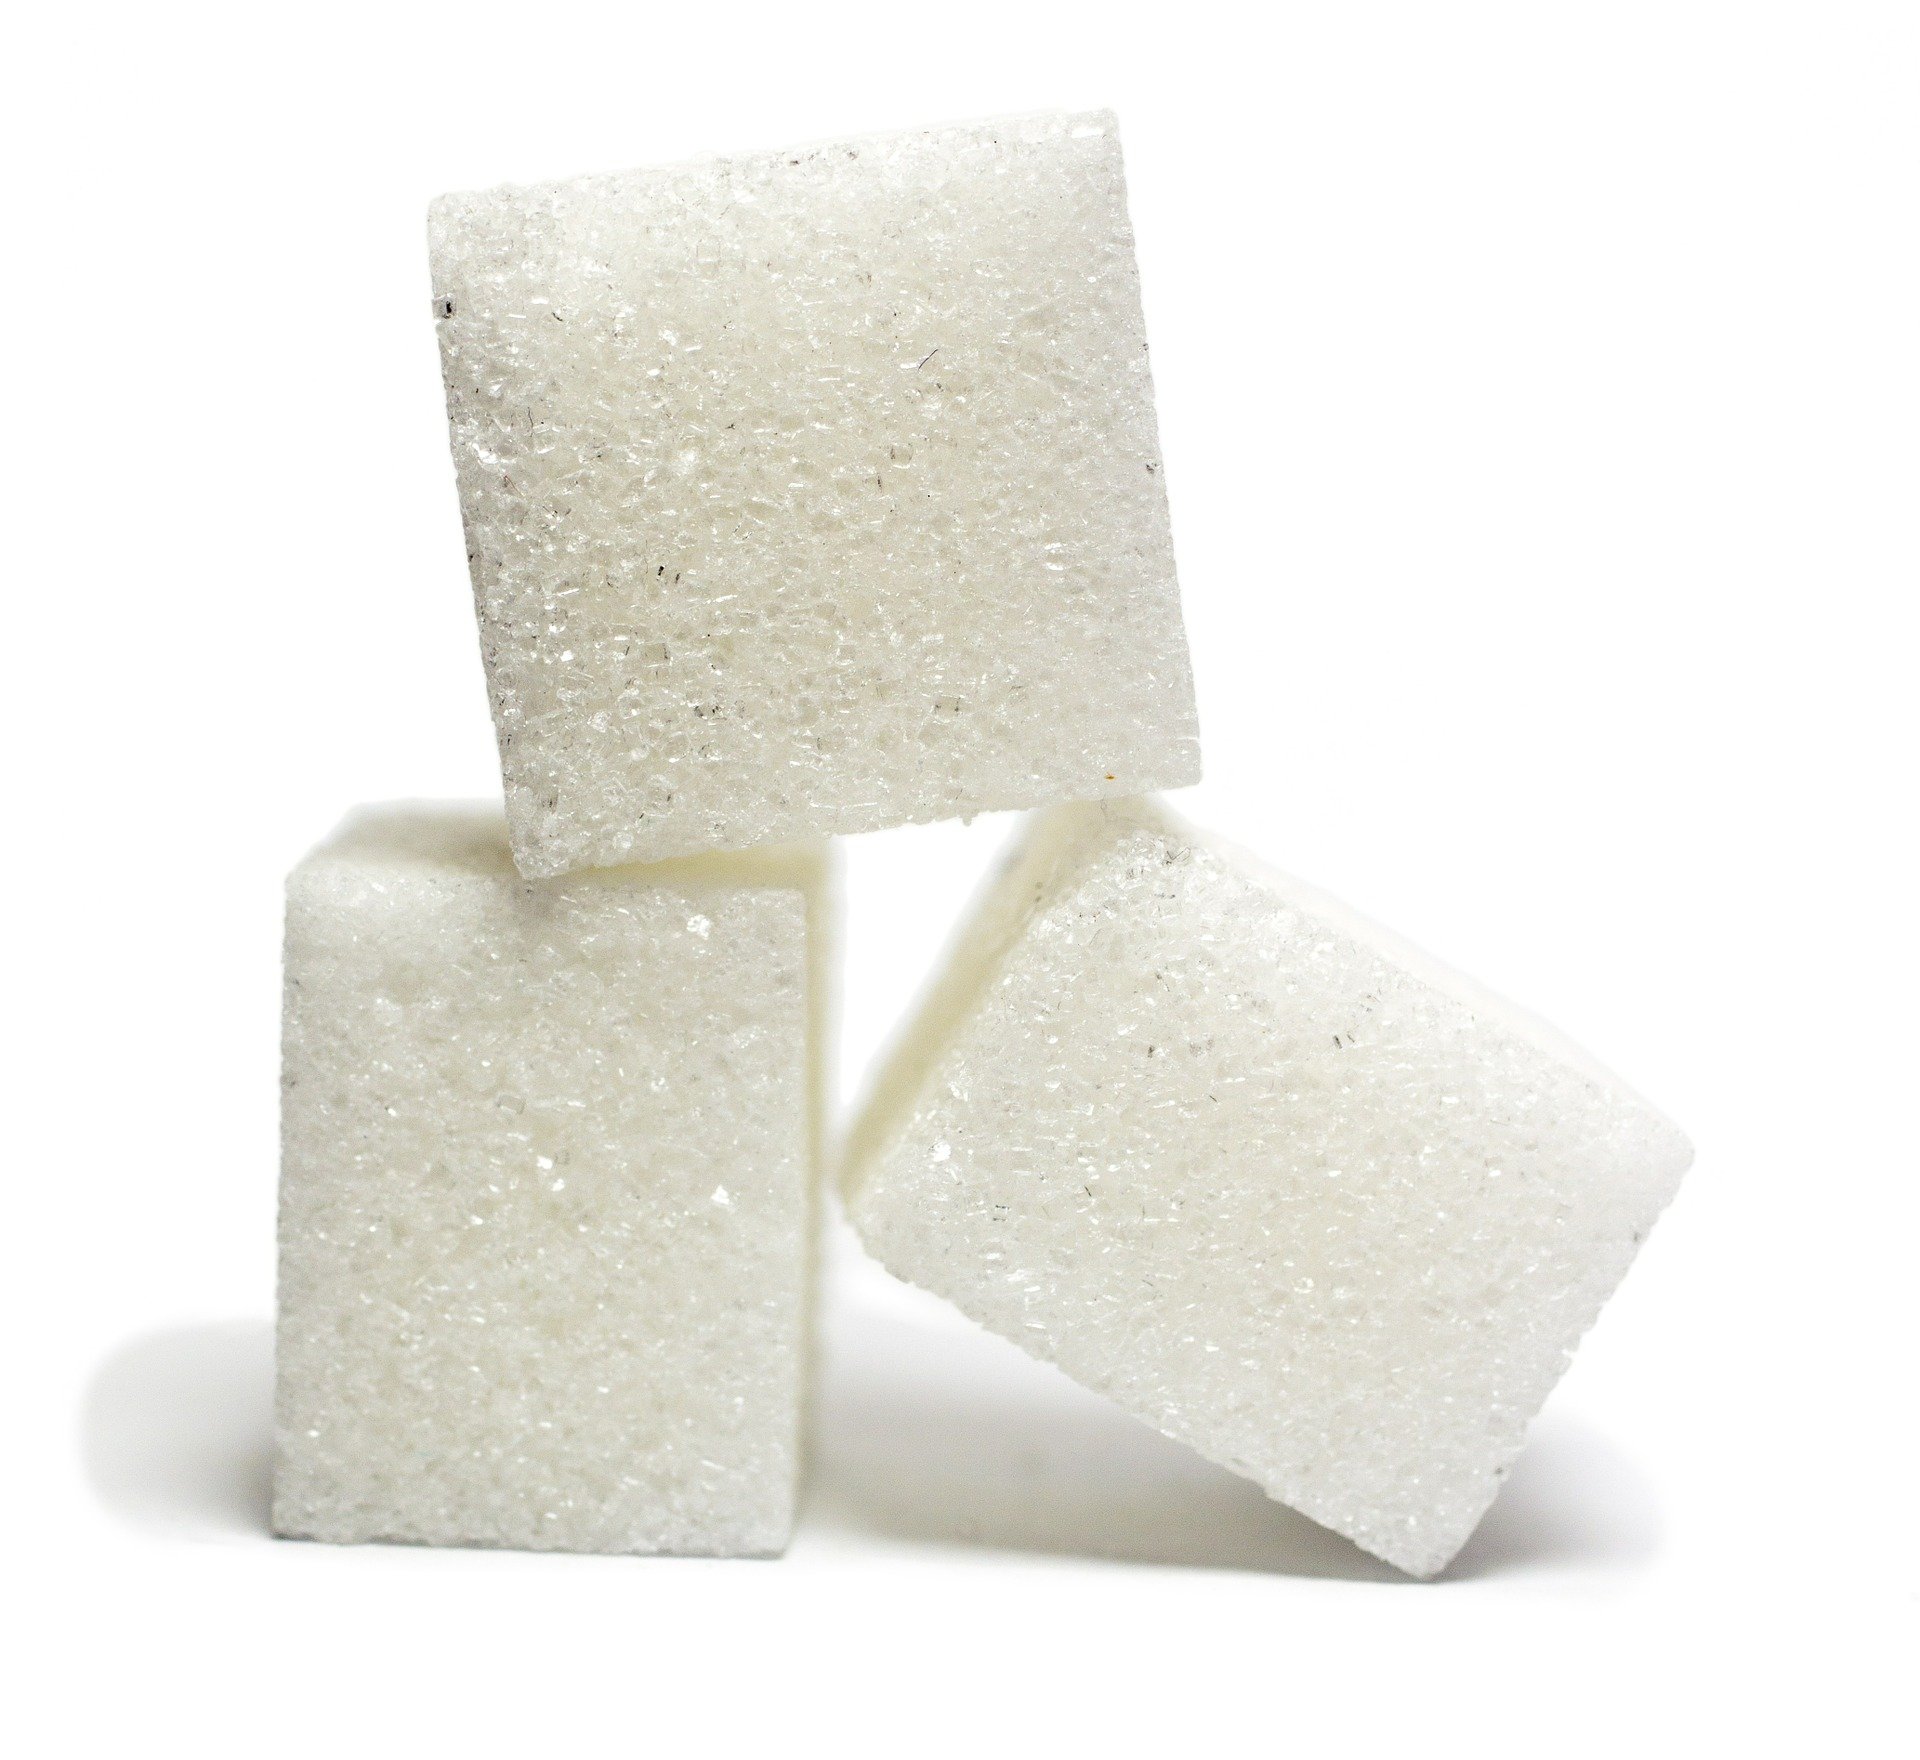 Un estudio desvela la relación entre el azúcar y la proliferación del cáncer